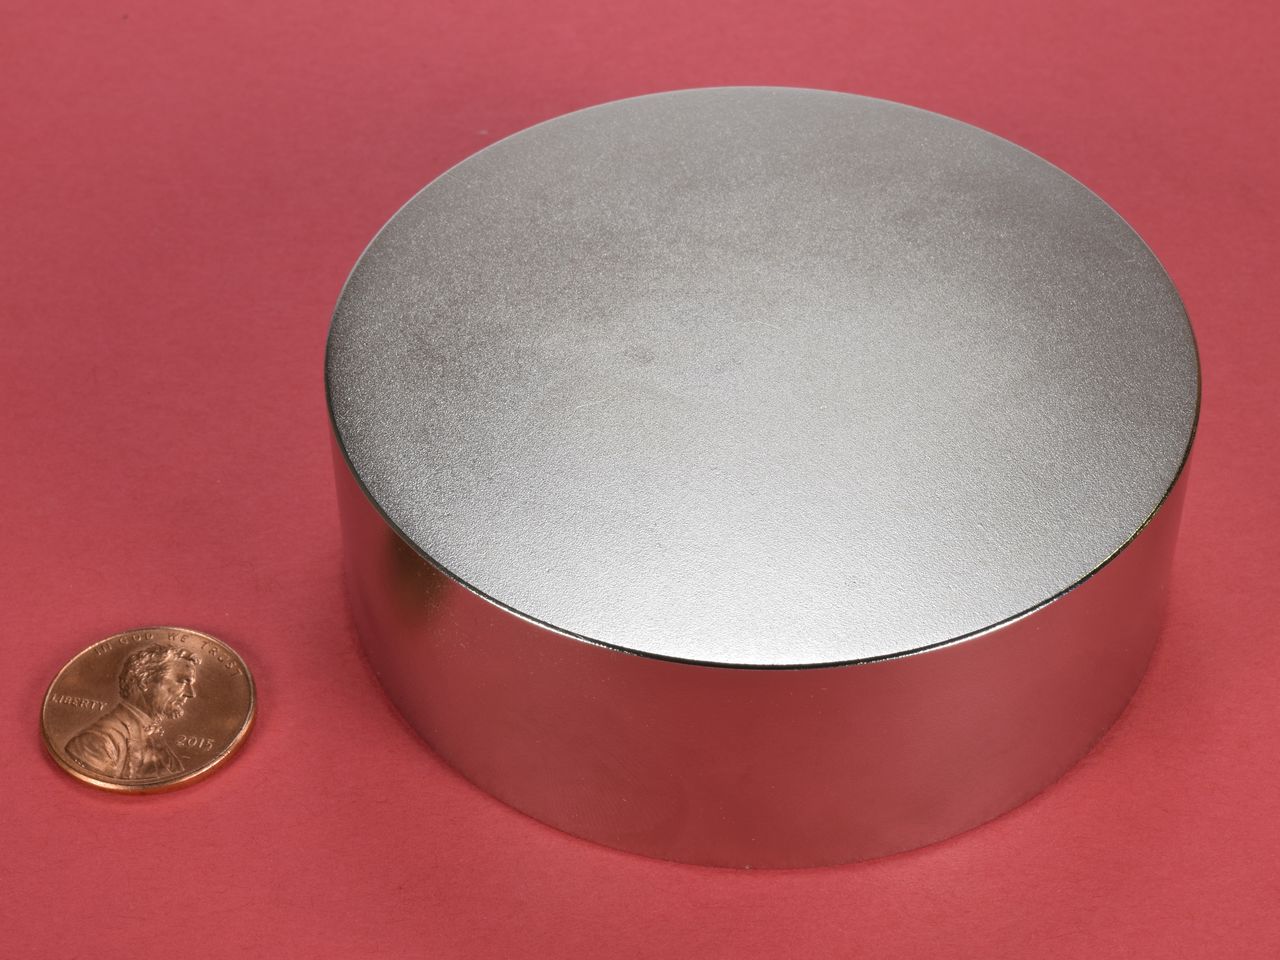 nødvendig Effektivitet realistisk 400 lbs of pull Rare Earth Magnet - Mr Locksmith Training